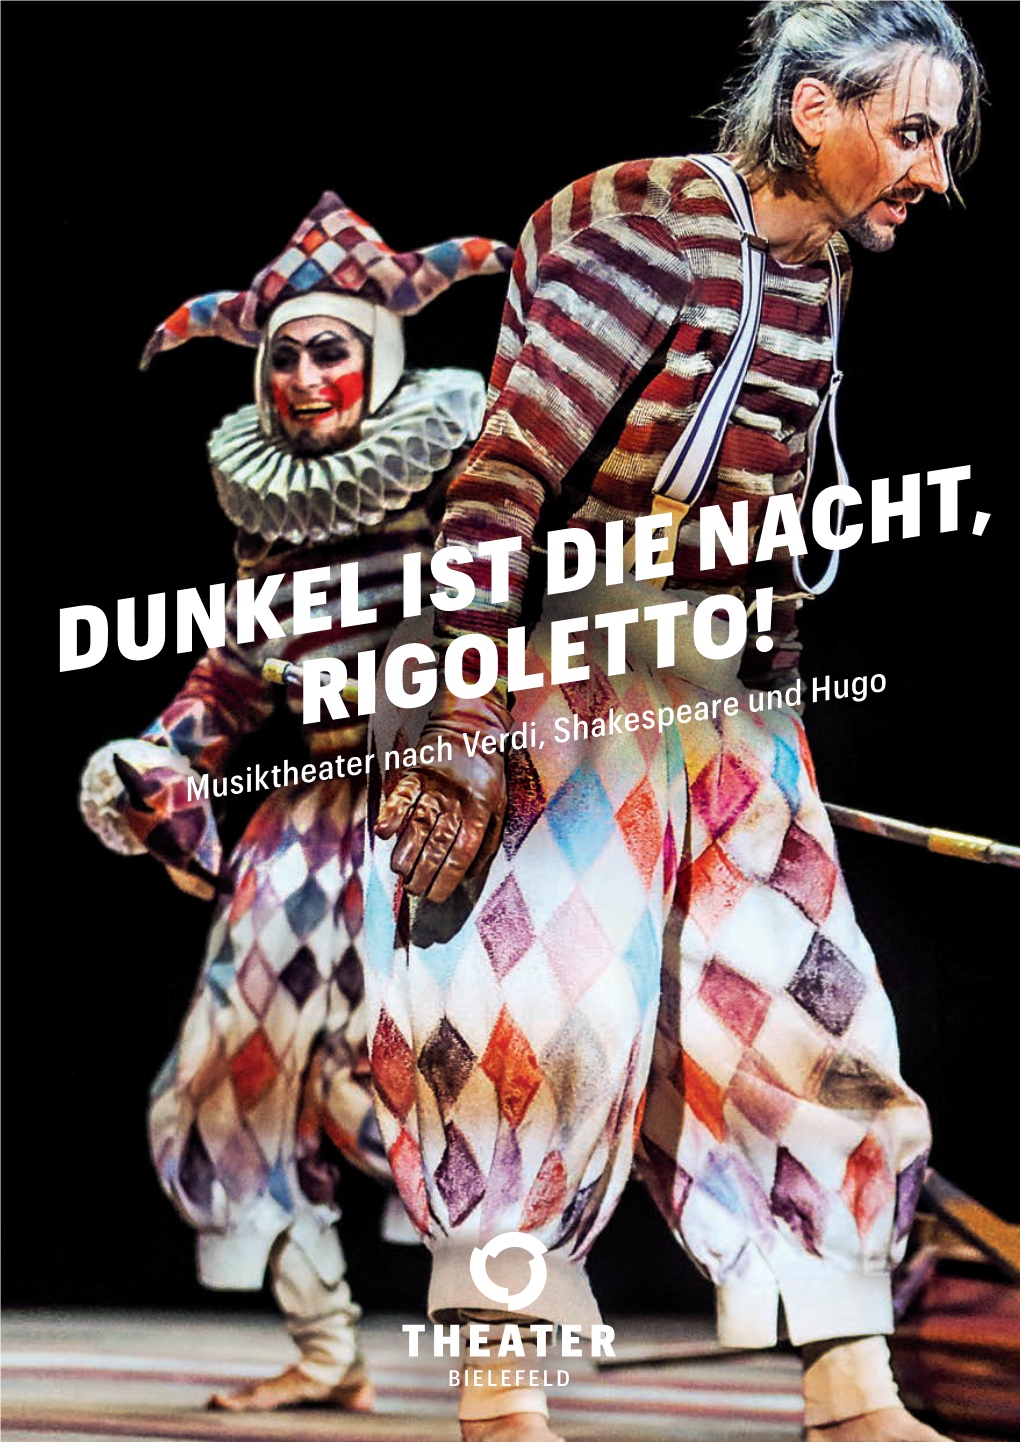 Dunkel Ist Die Nacht, Rigoletto!